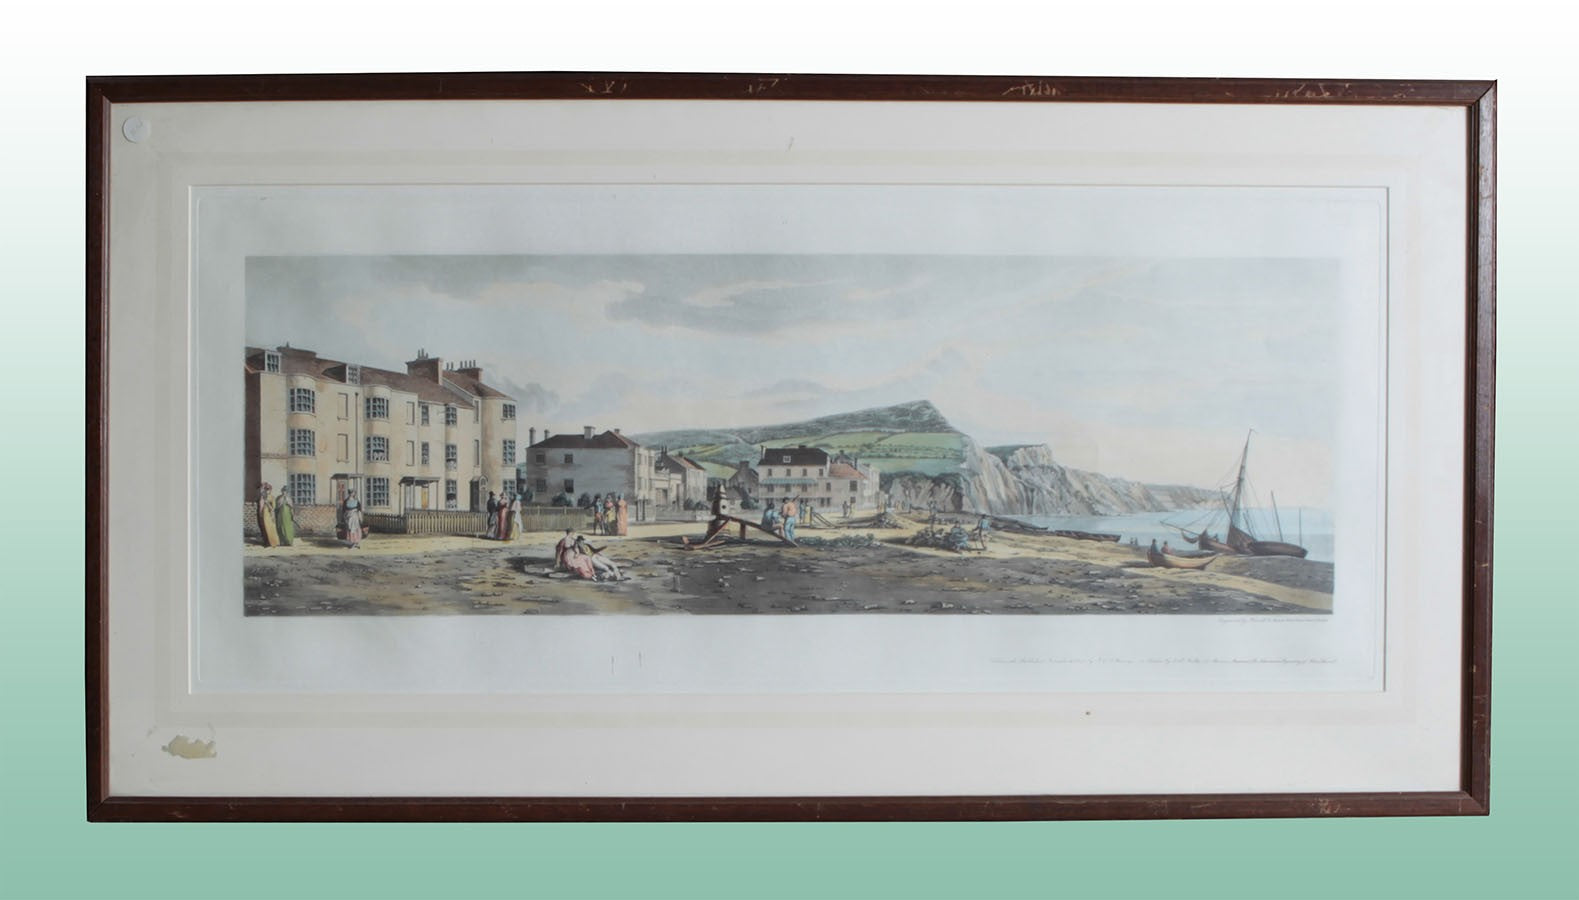 Antica stampa colori inglese del 1900 raffigurante cittadina sul mare